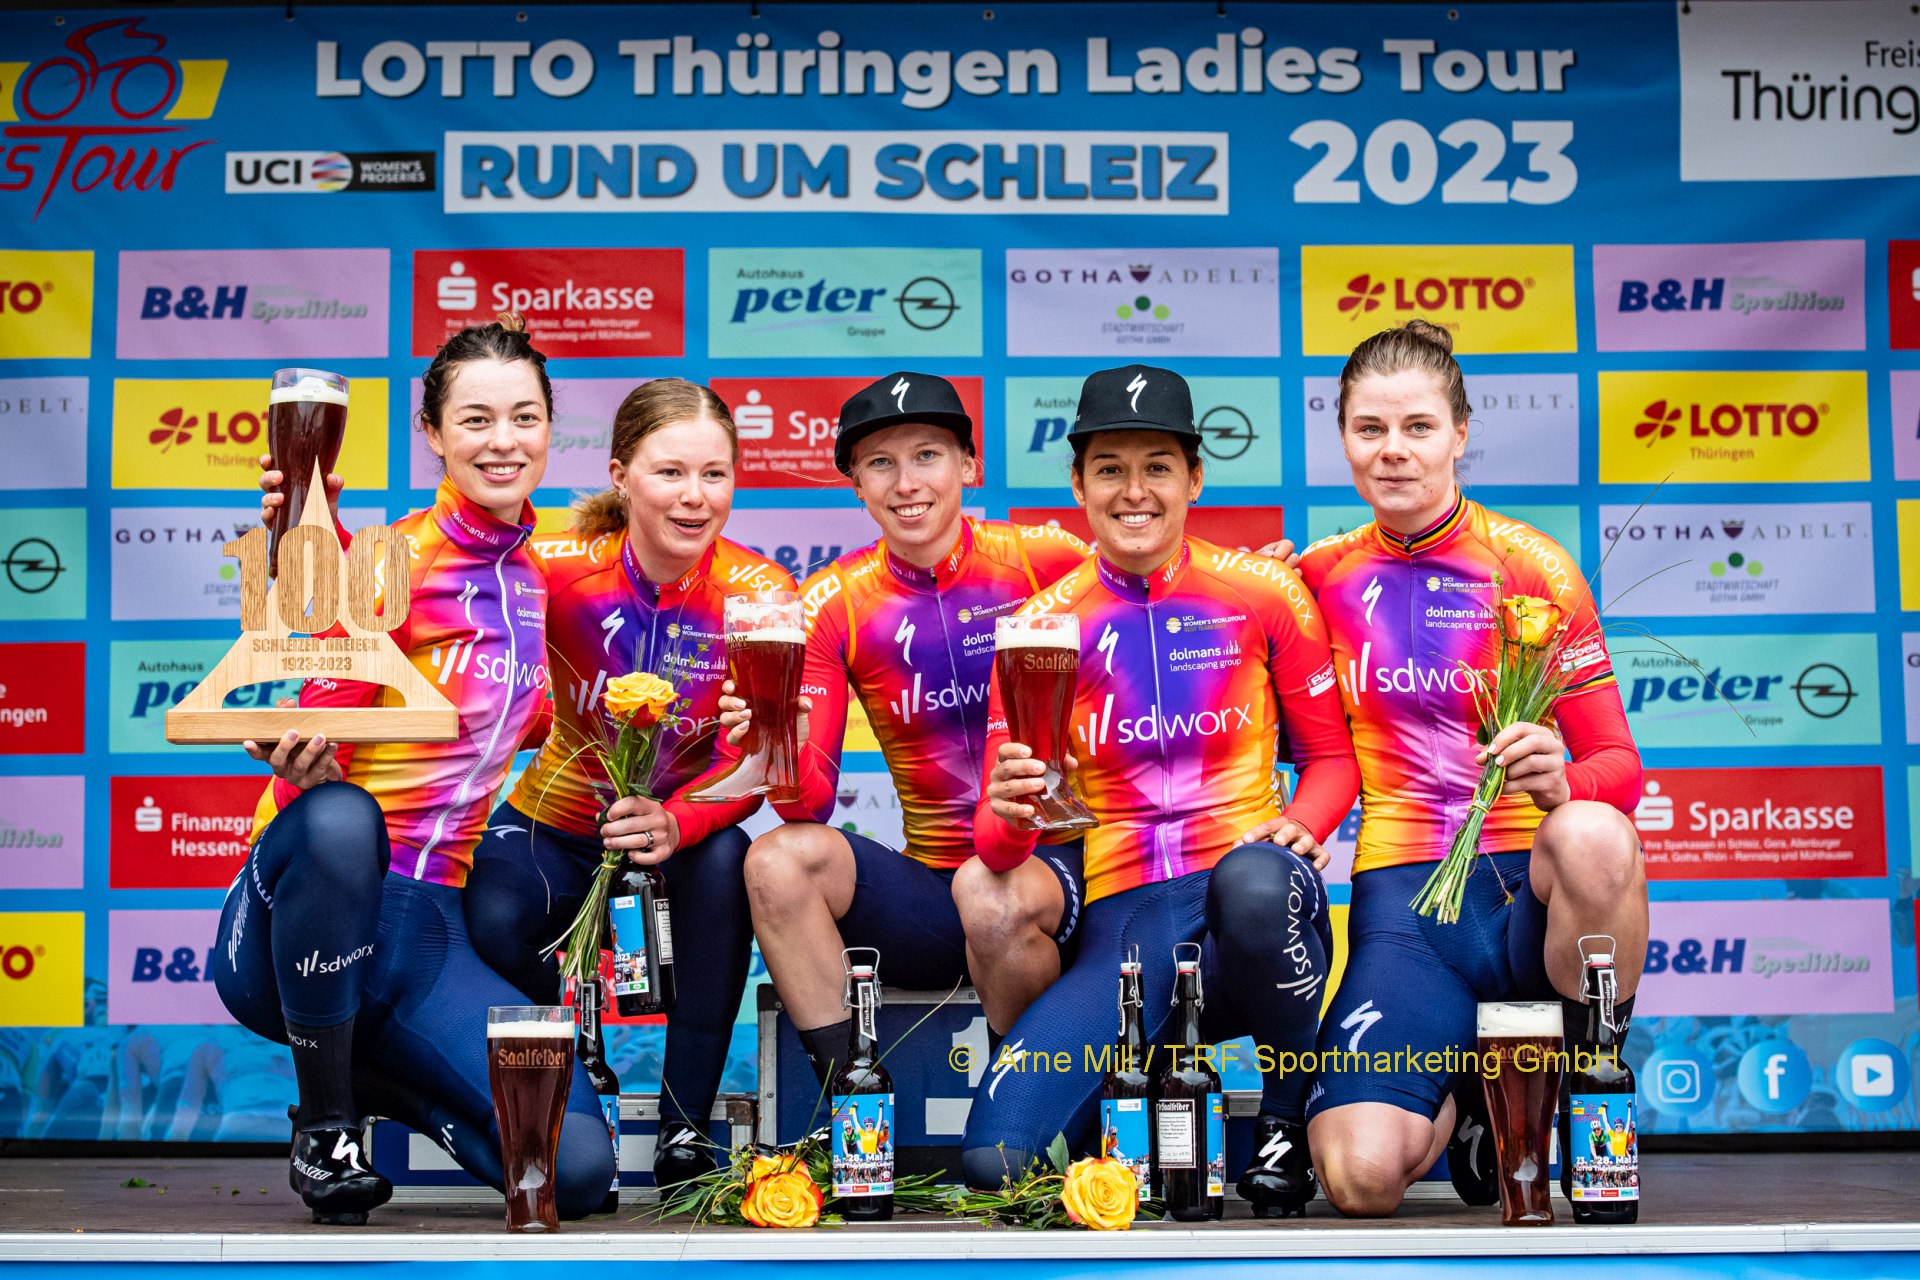 35. LOTTO Thüringen Ladies Tour: SD Worx gewinnt Mannschaftszeitfahren; Kopecky trägt Gelbes Trikot